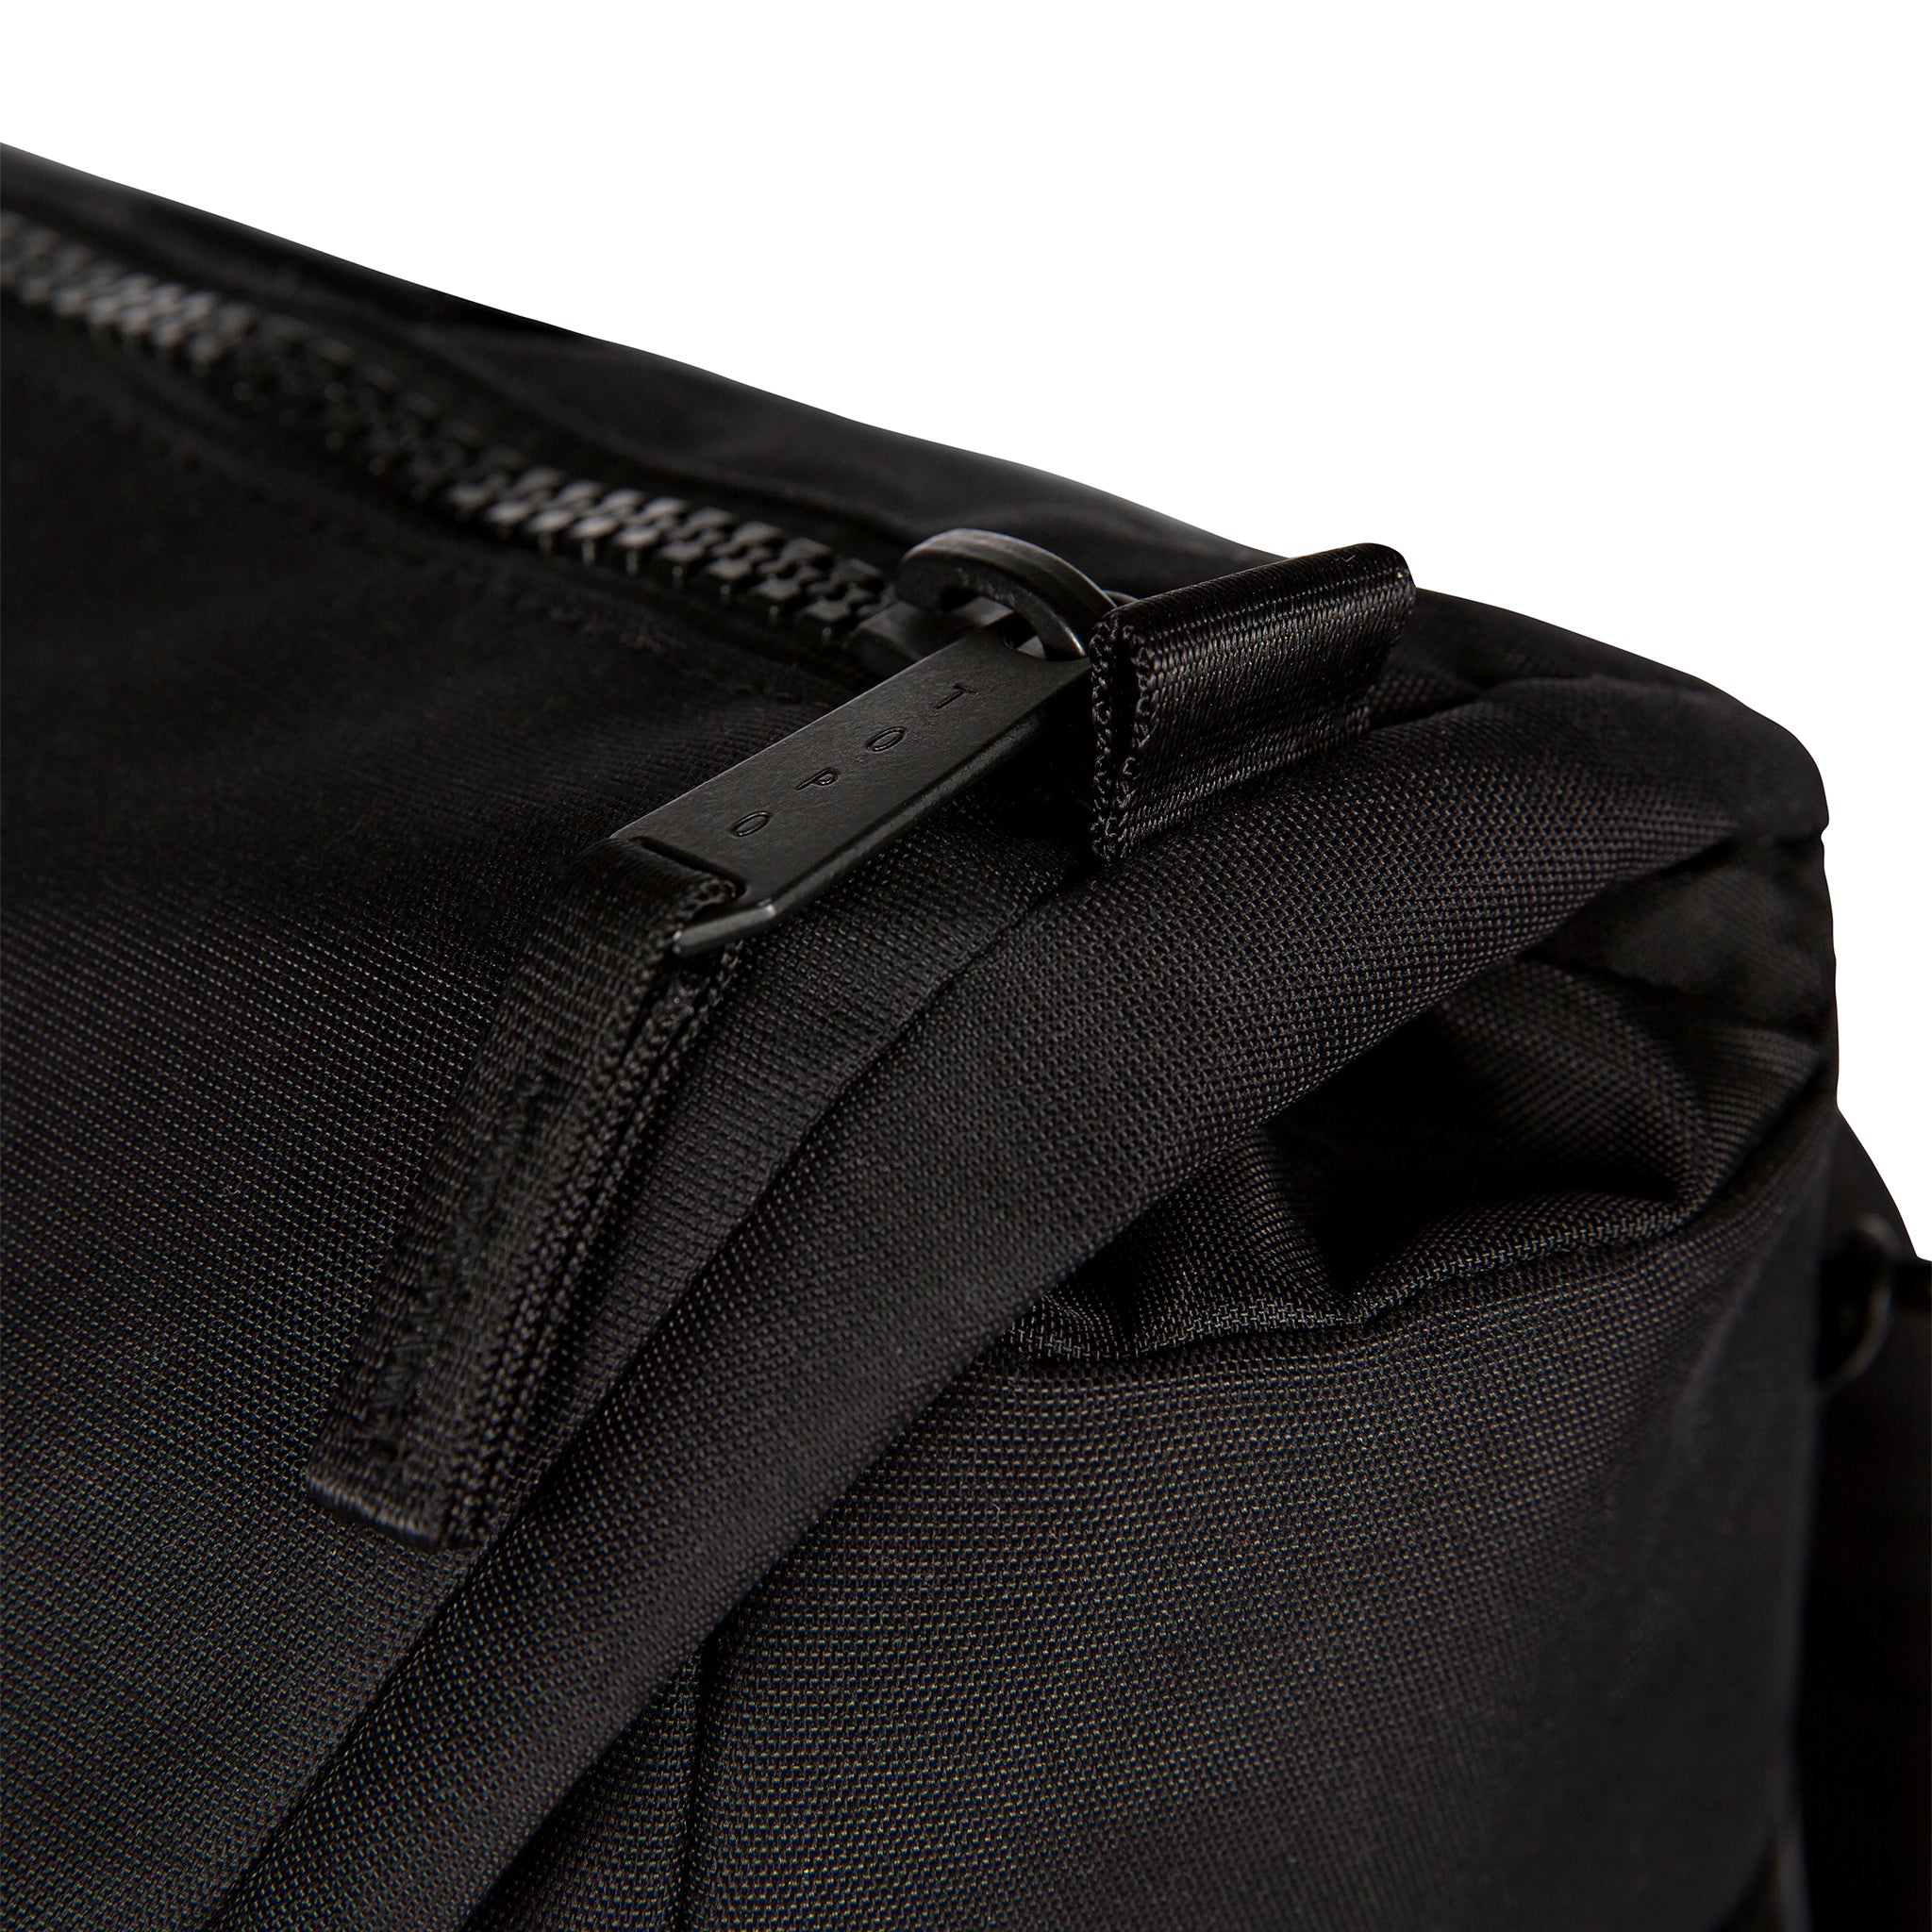 Topo Designs Rover Pack - Premium Black